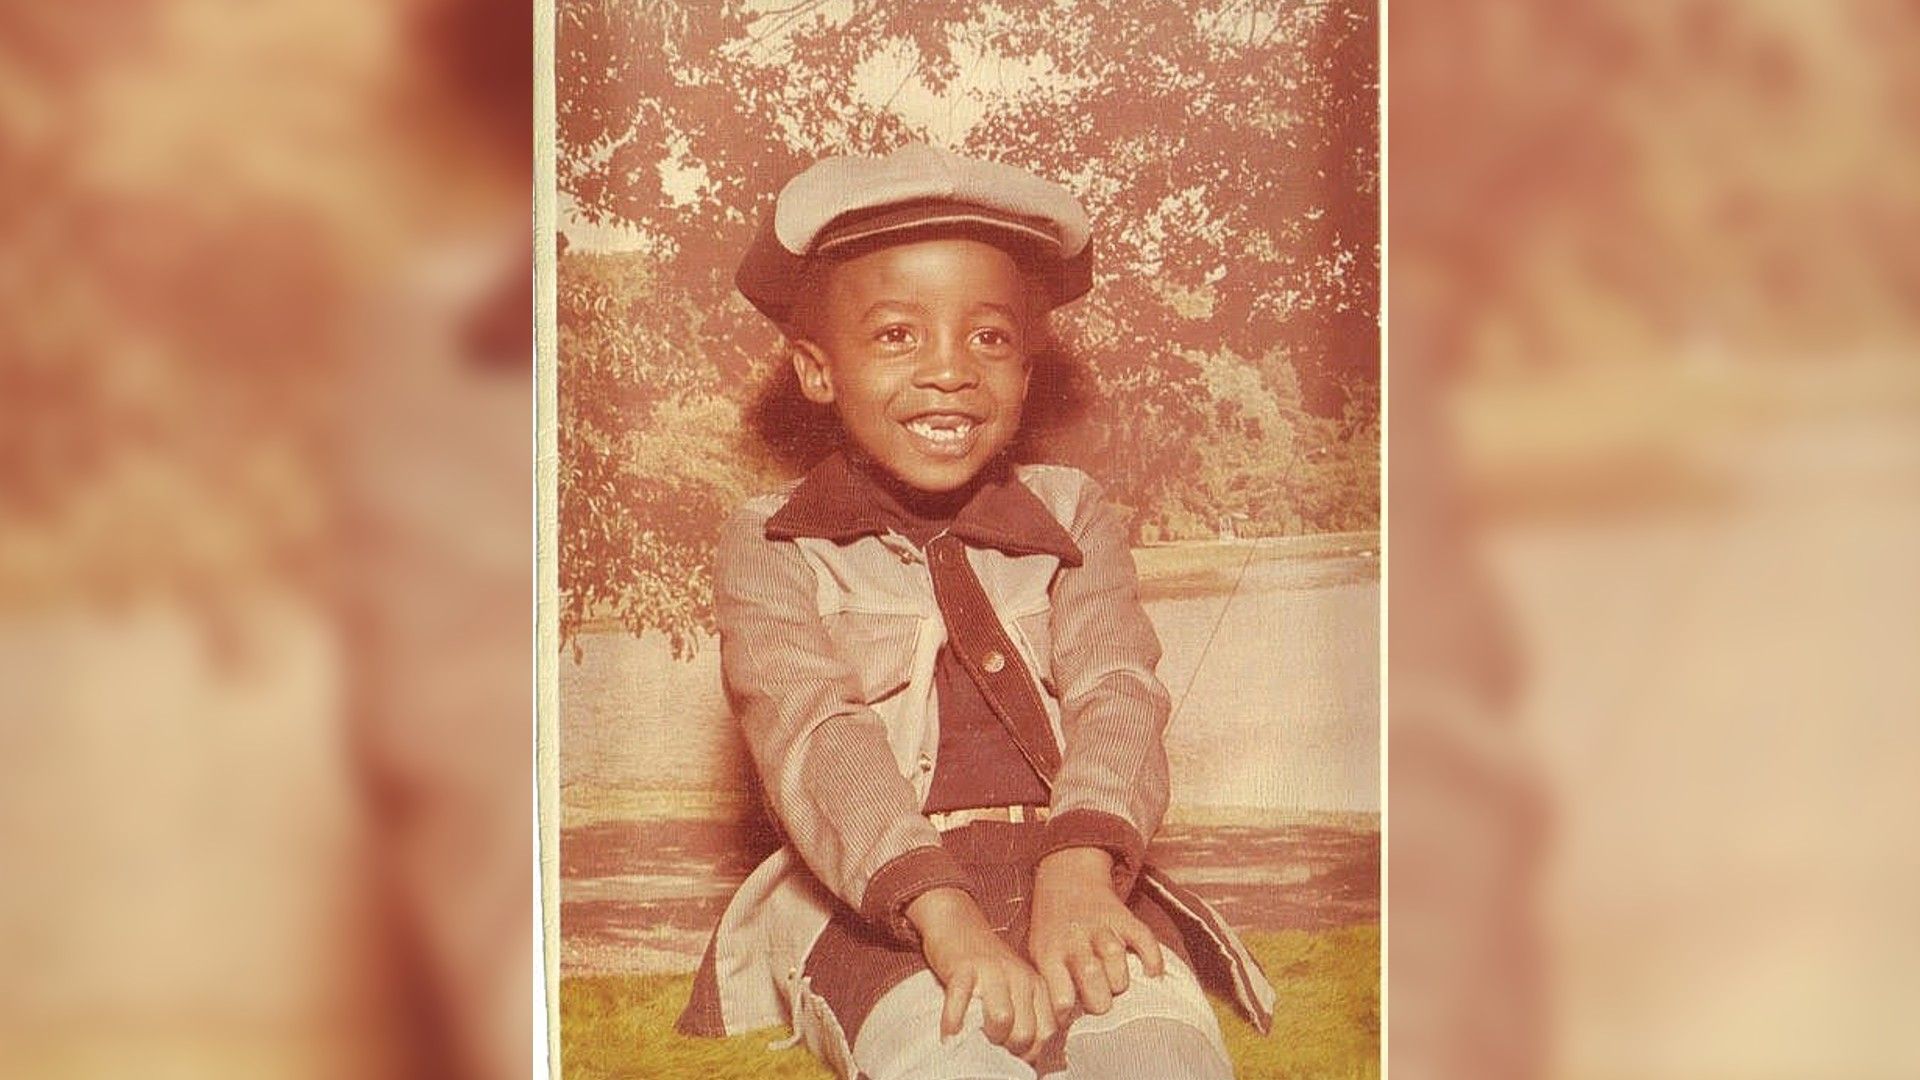 Chadwick Boseman as a child